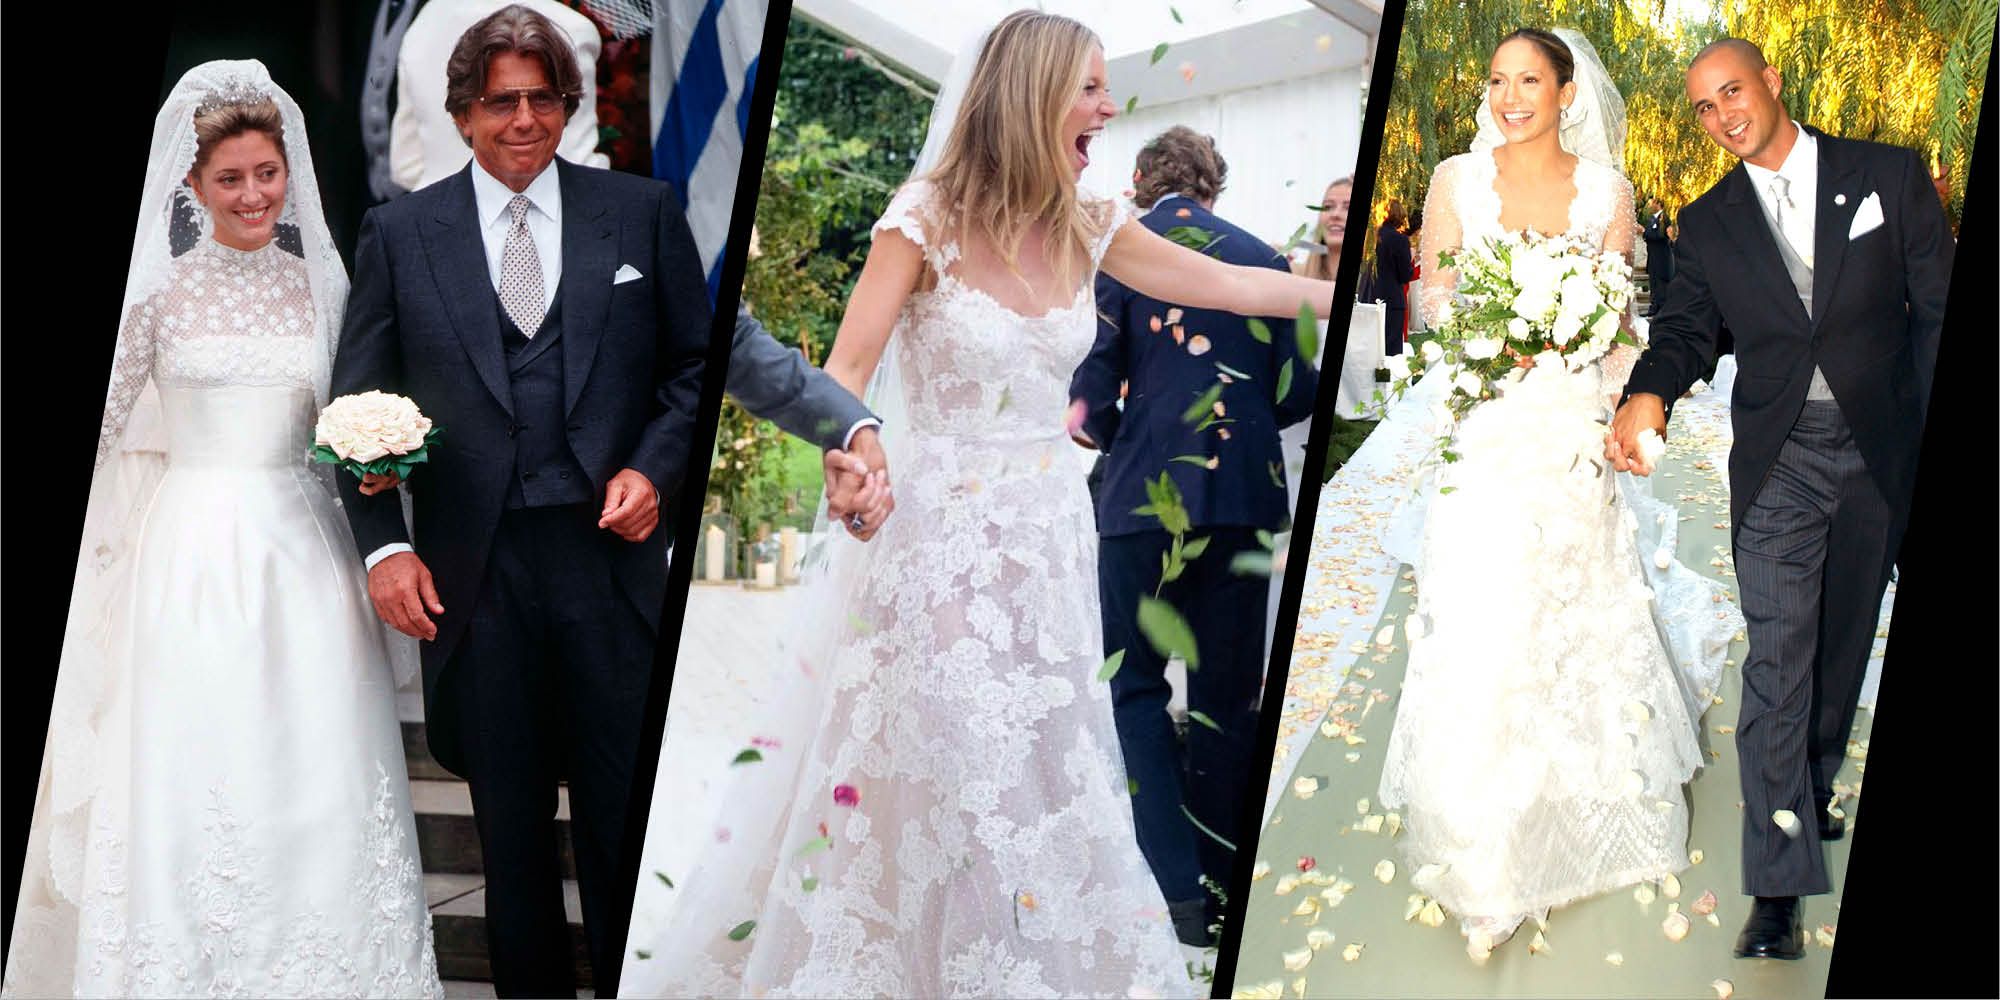 Fugtig lektie bund Famous brides who have worn Valentino wedding dresses